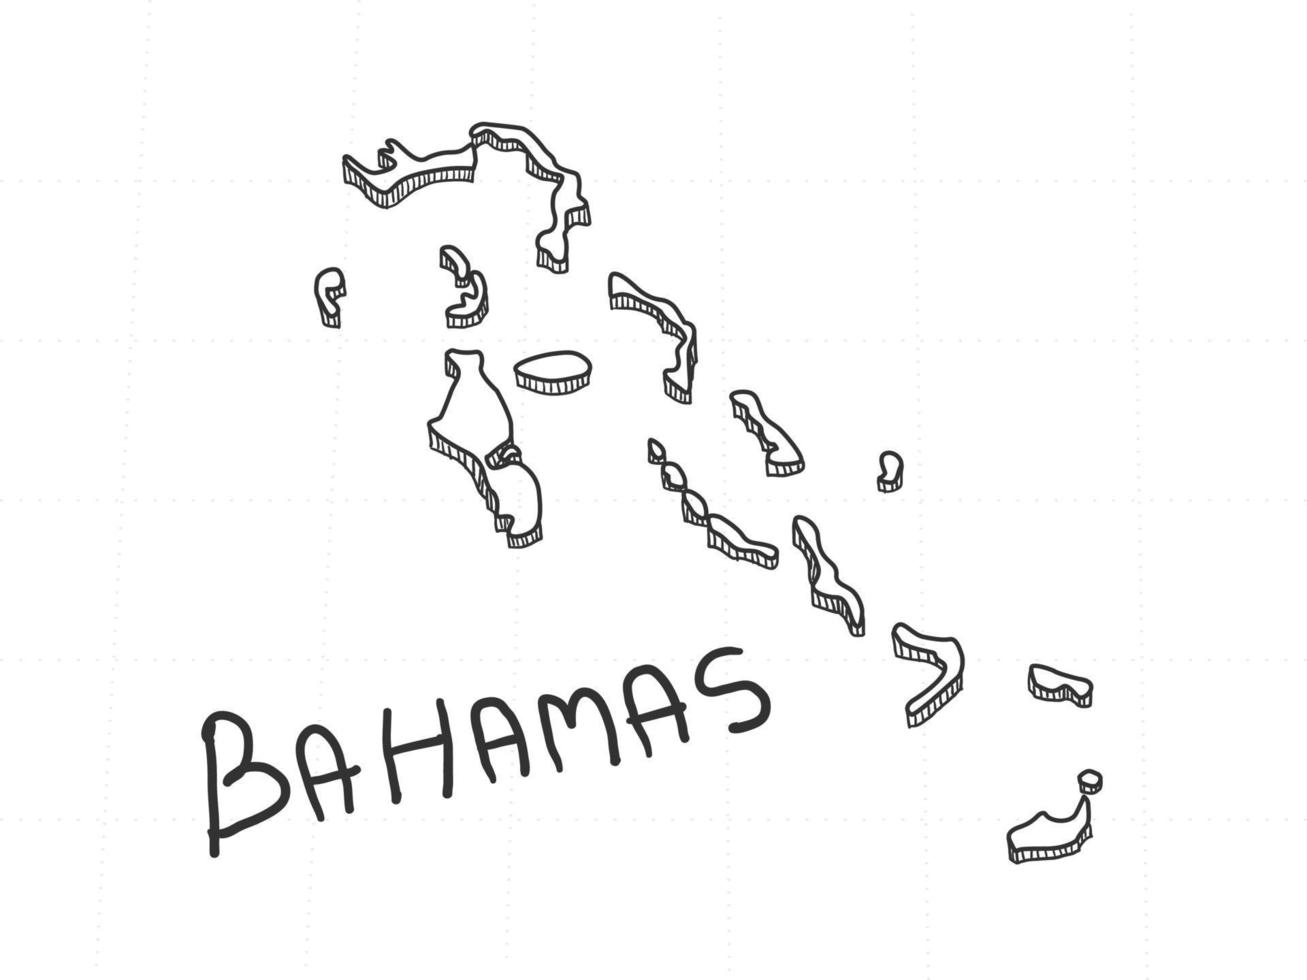 dibujado a mano del mapa 3d de bahamas sobre fondo blanco. vector